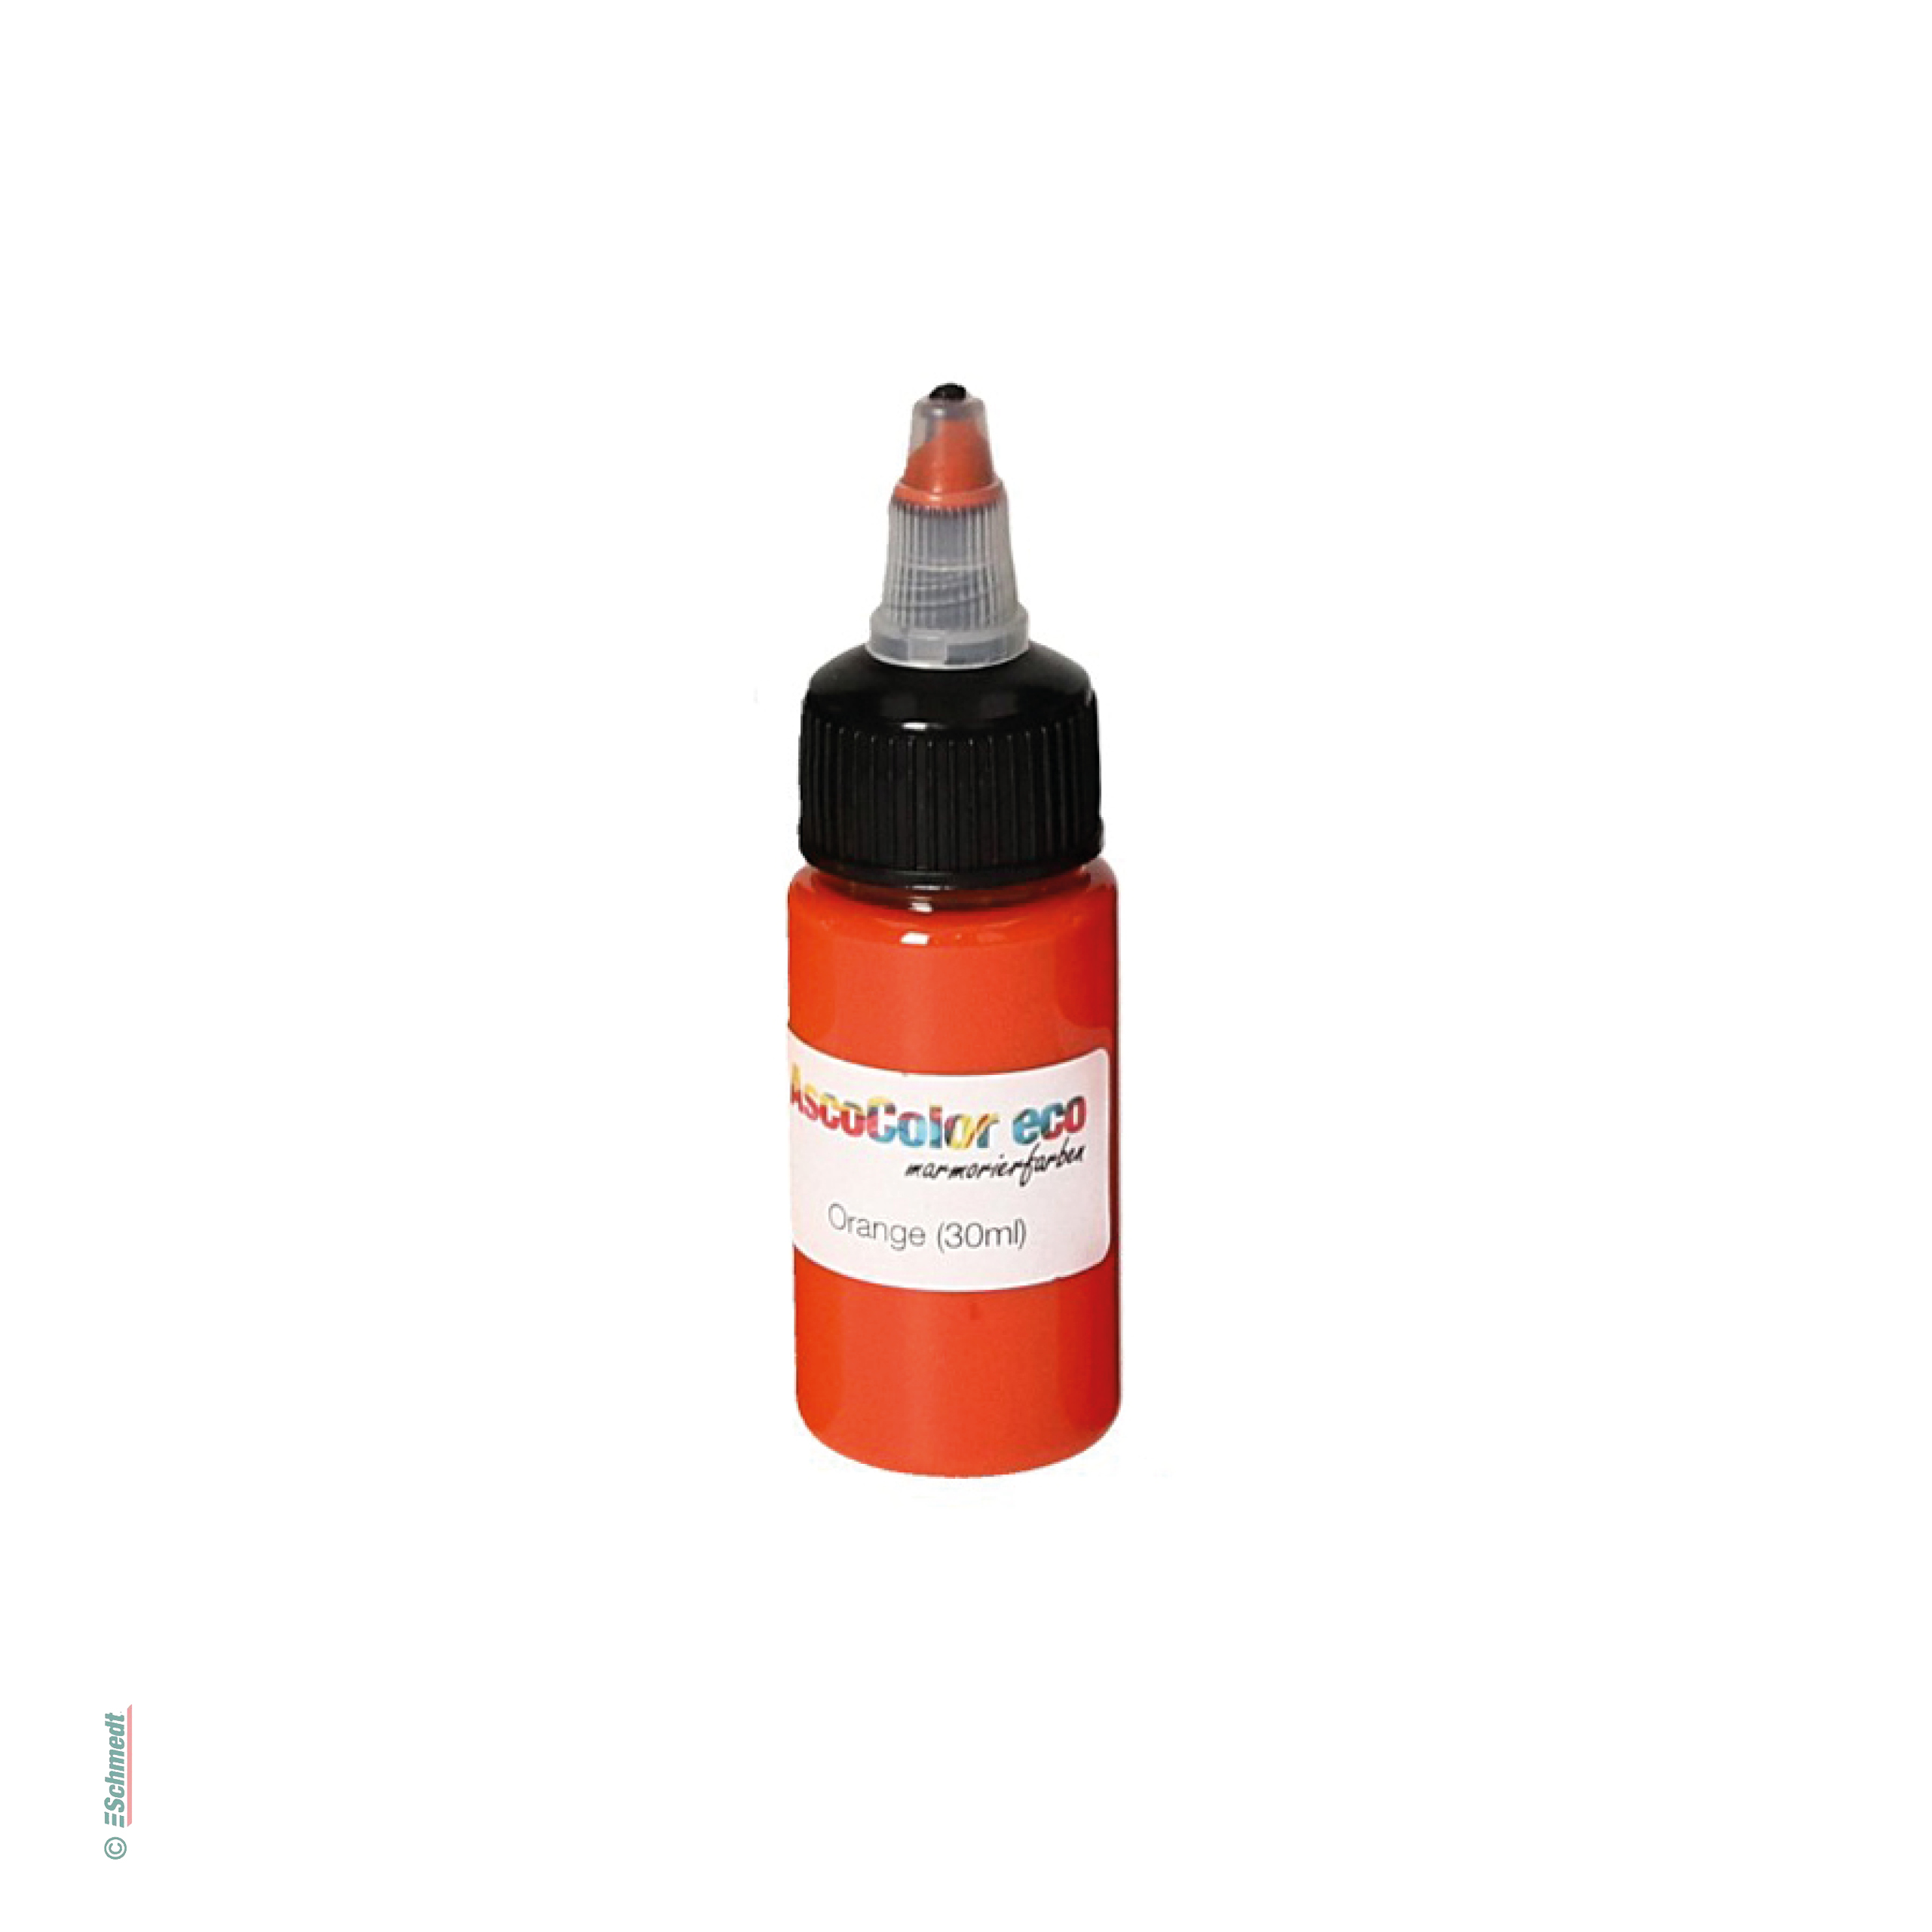 AscoColor eco - Marmorierfarbe - Farbe 102 - orange - Gebindegröße Flasche / 30 ml - zur Herstellung marmorierter Papiere...